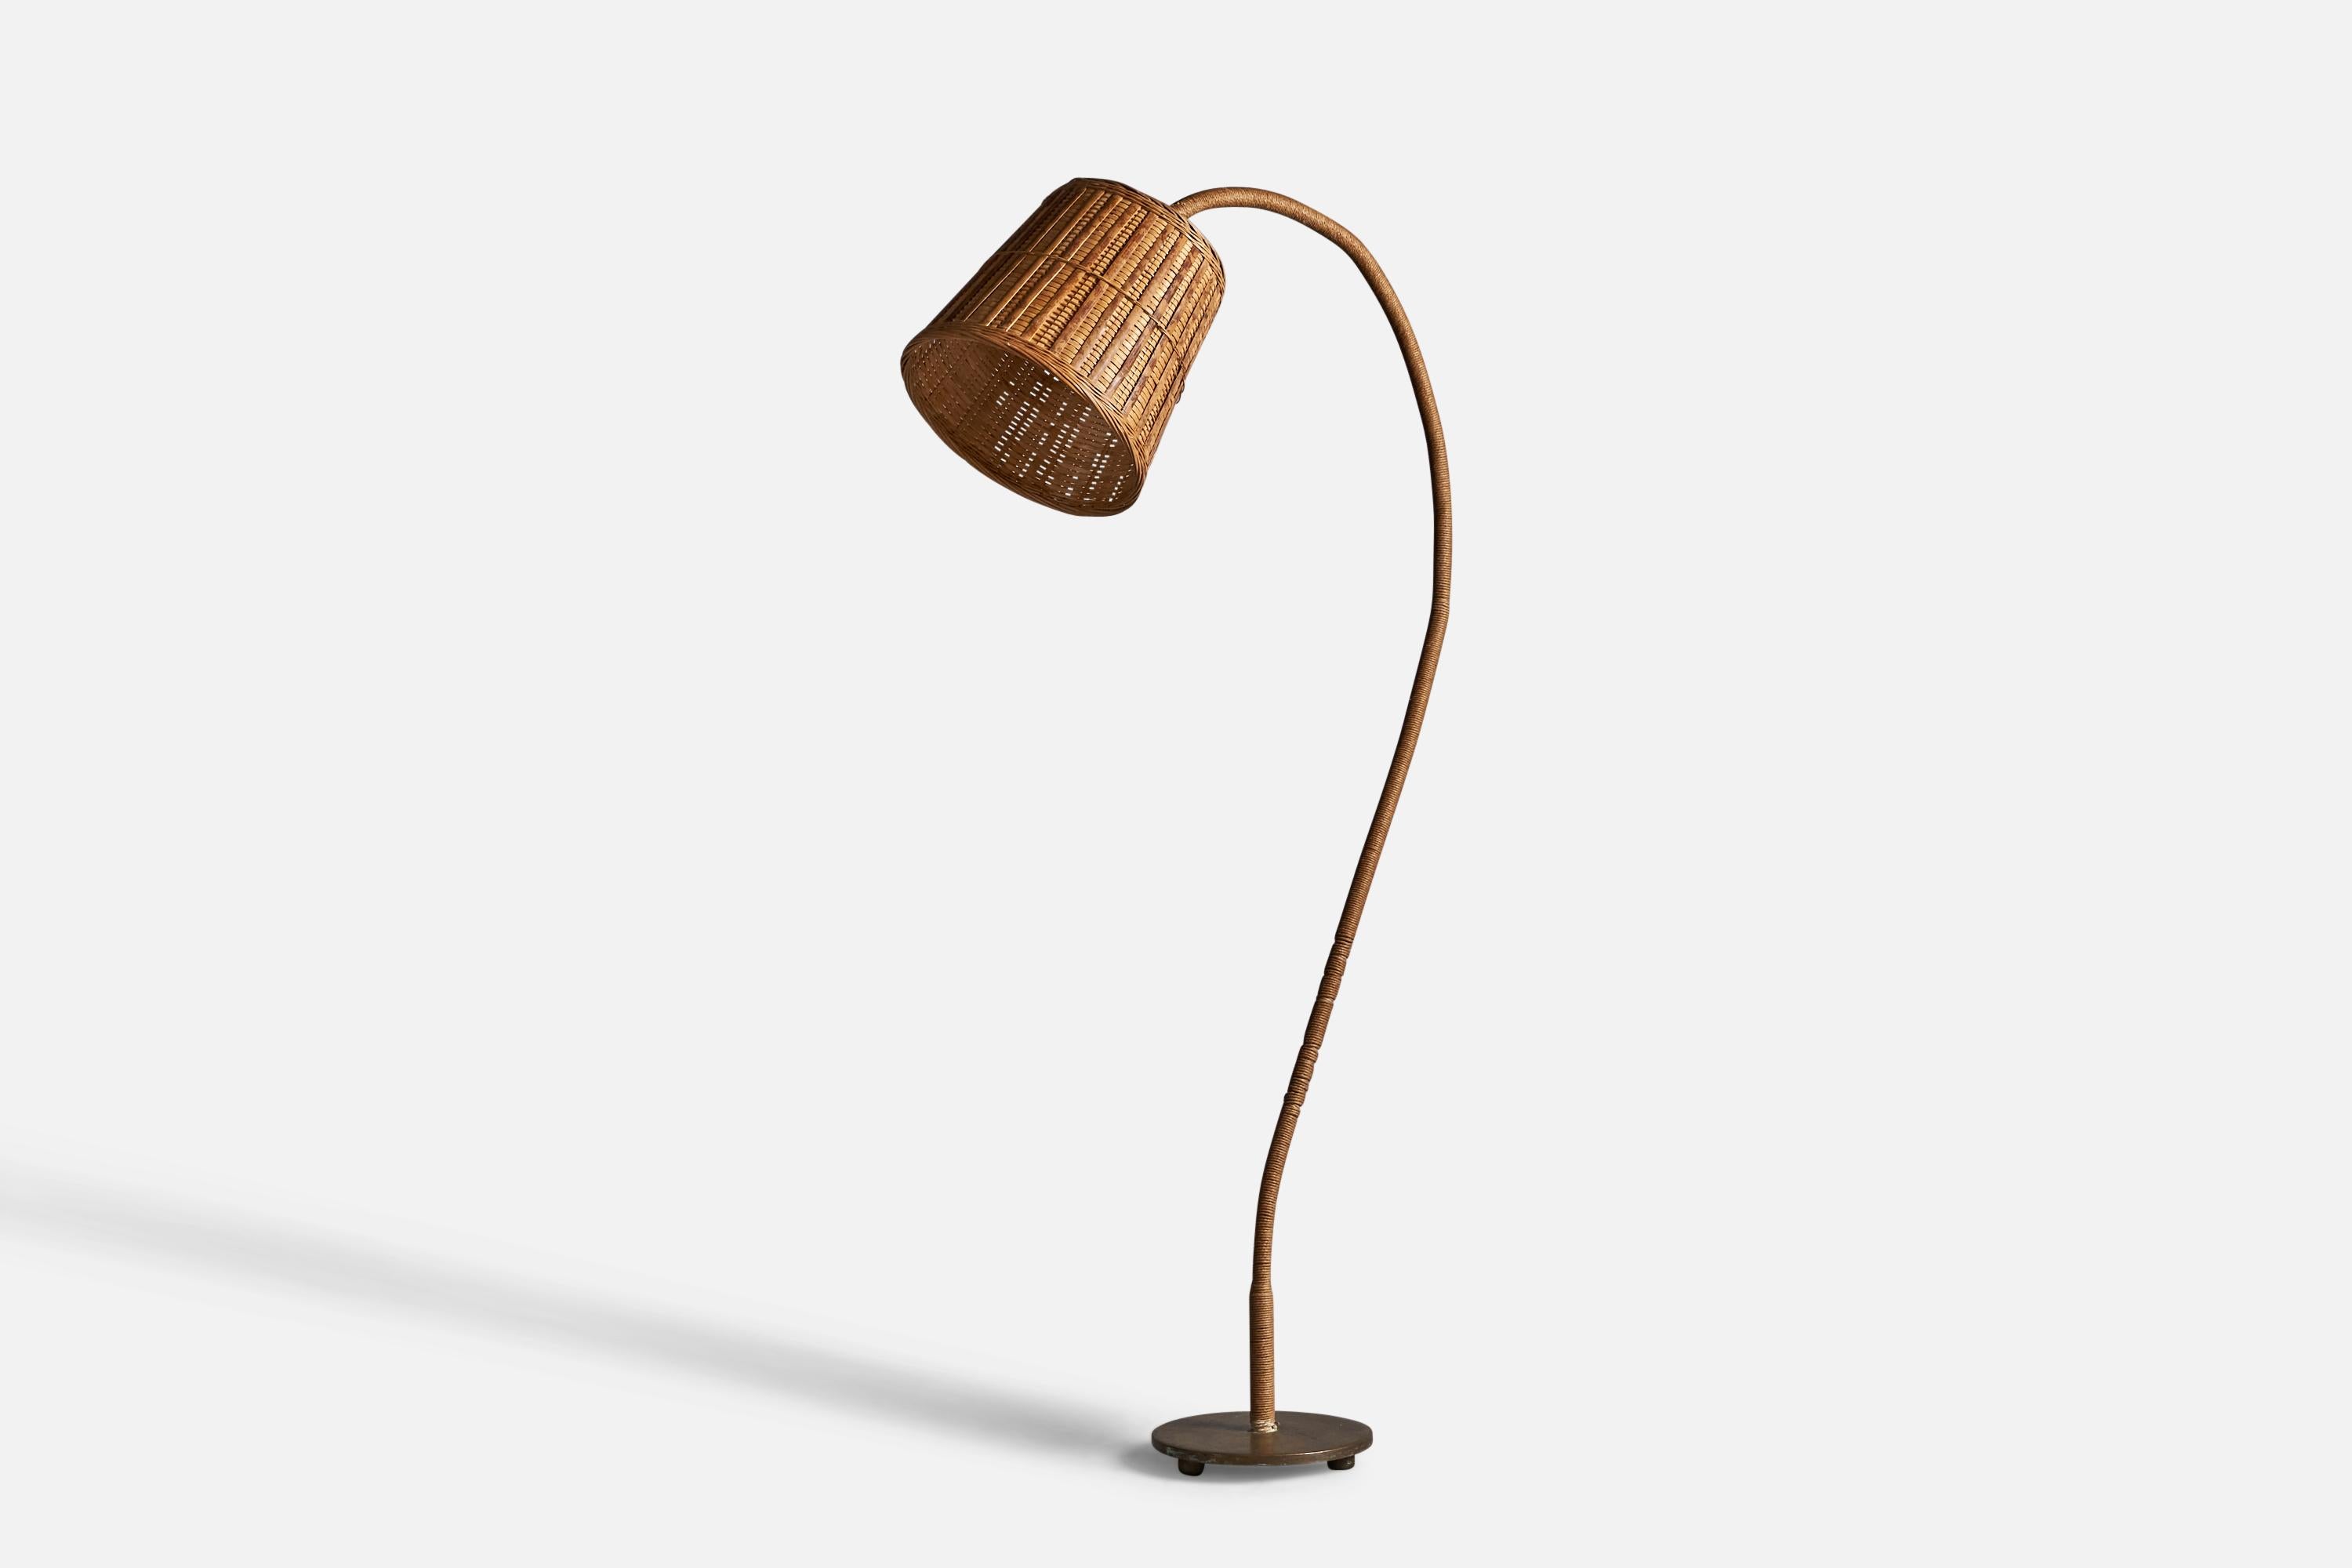 Lampadaire incurvé en rotin, corde, laiton et bois, conçu et produit en Suède, années 1930.

Dimensions globales (pouces) : 59